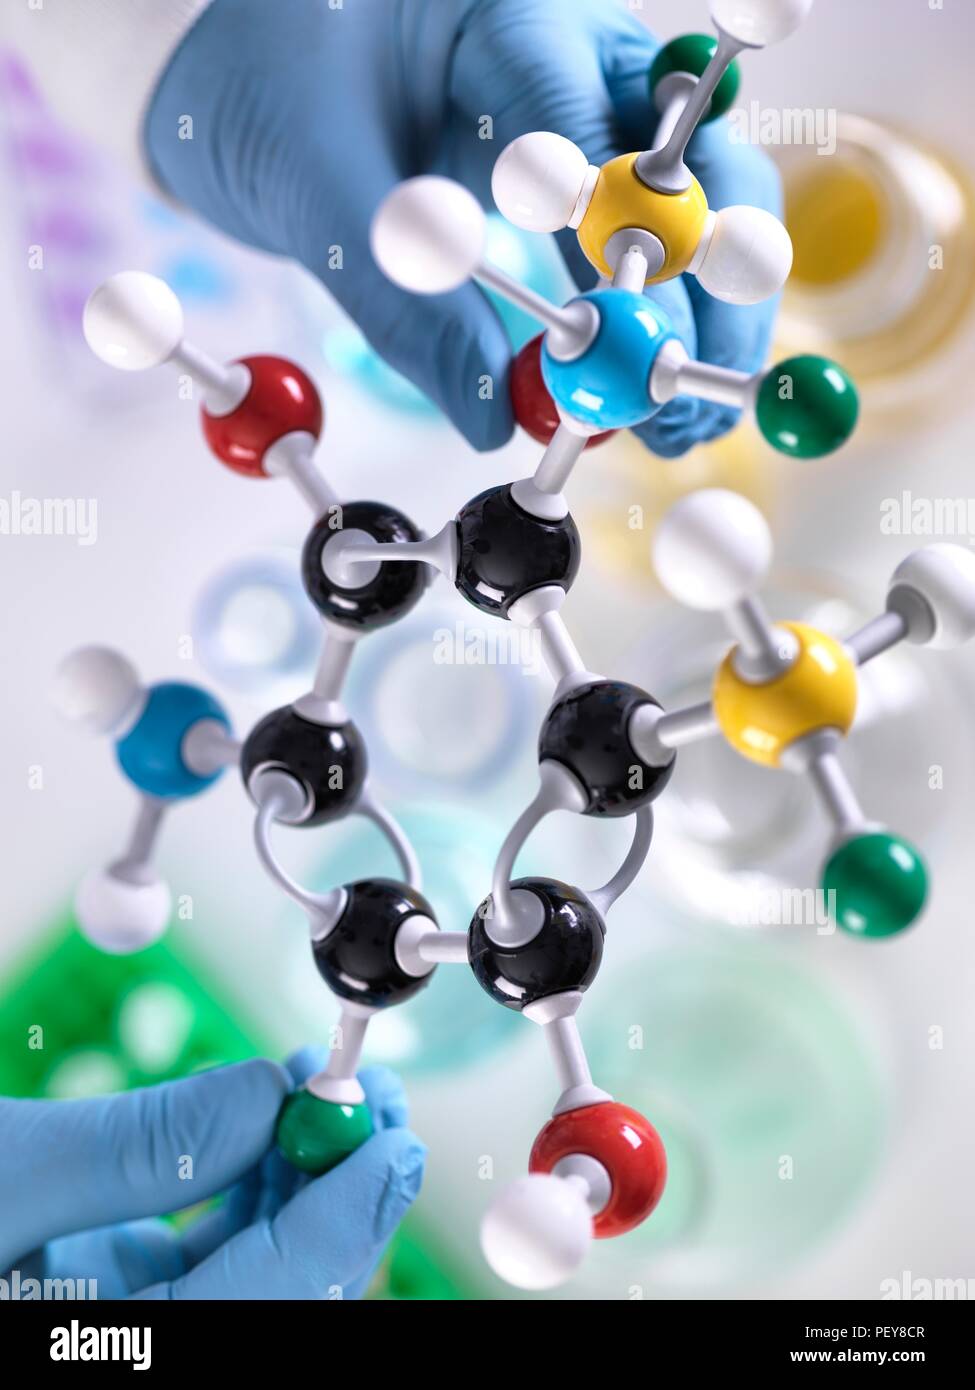 La recherche en chimie. Chercheur chargé de concevoir une formule chimique à l'aide d'un modèle moléculaire. Banque D'Images